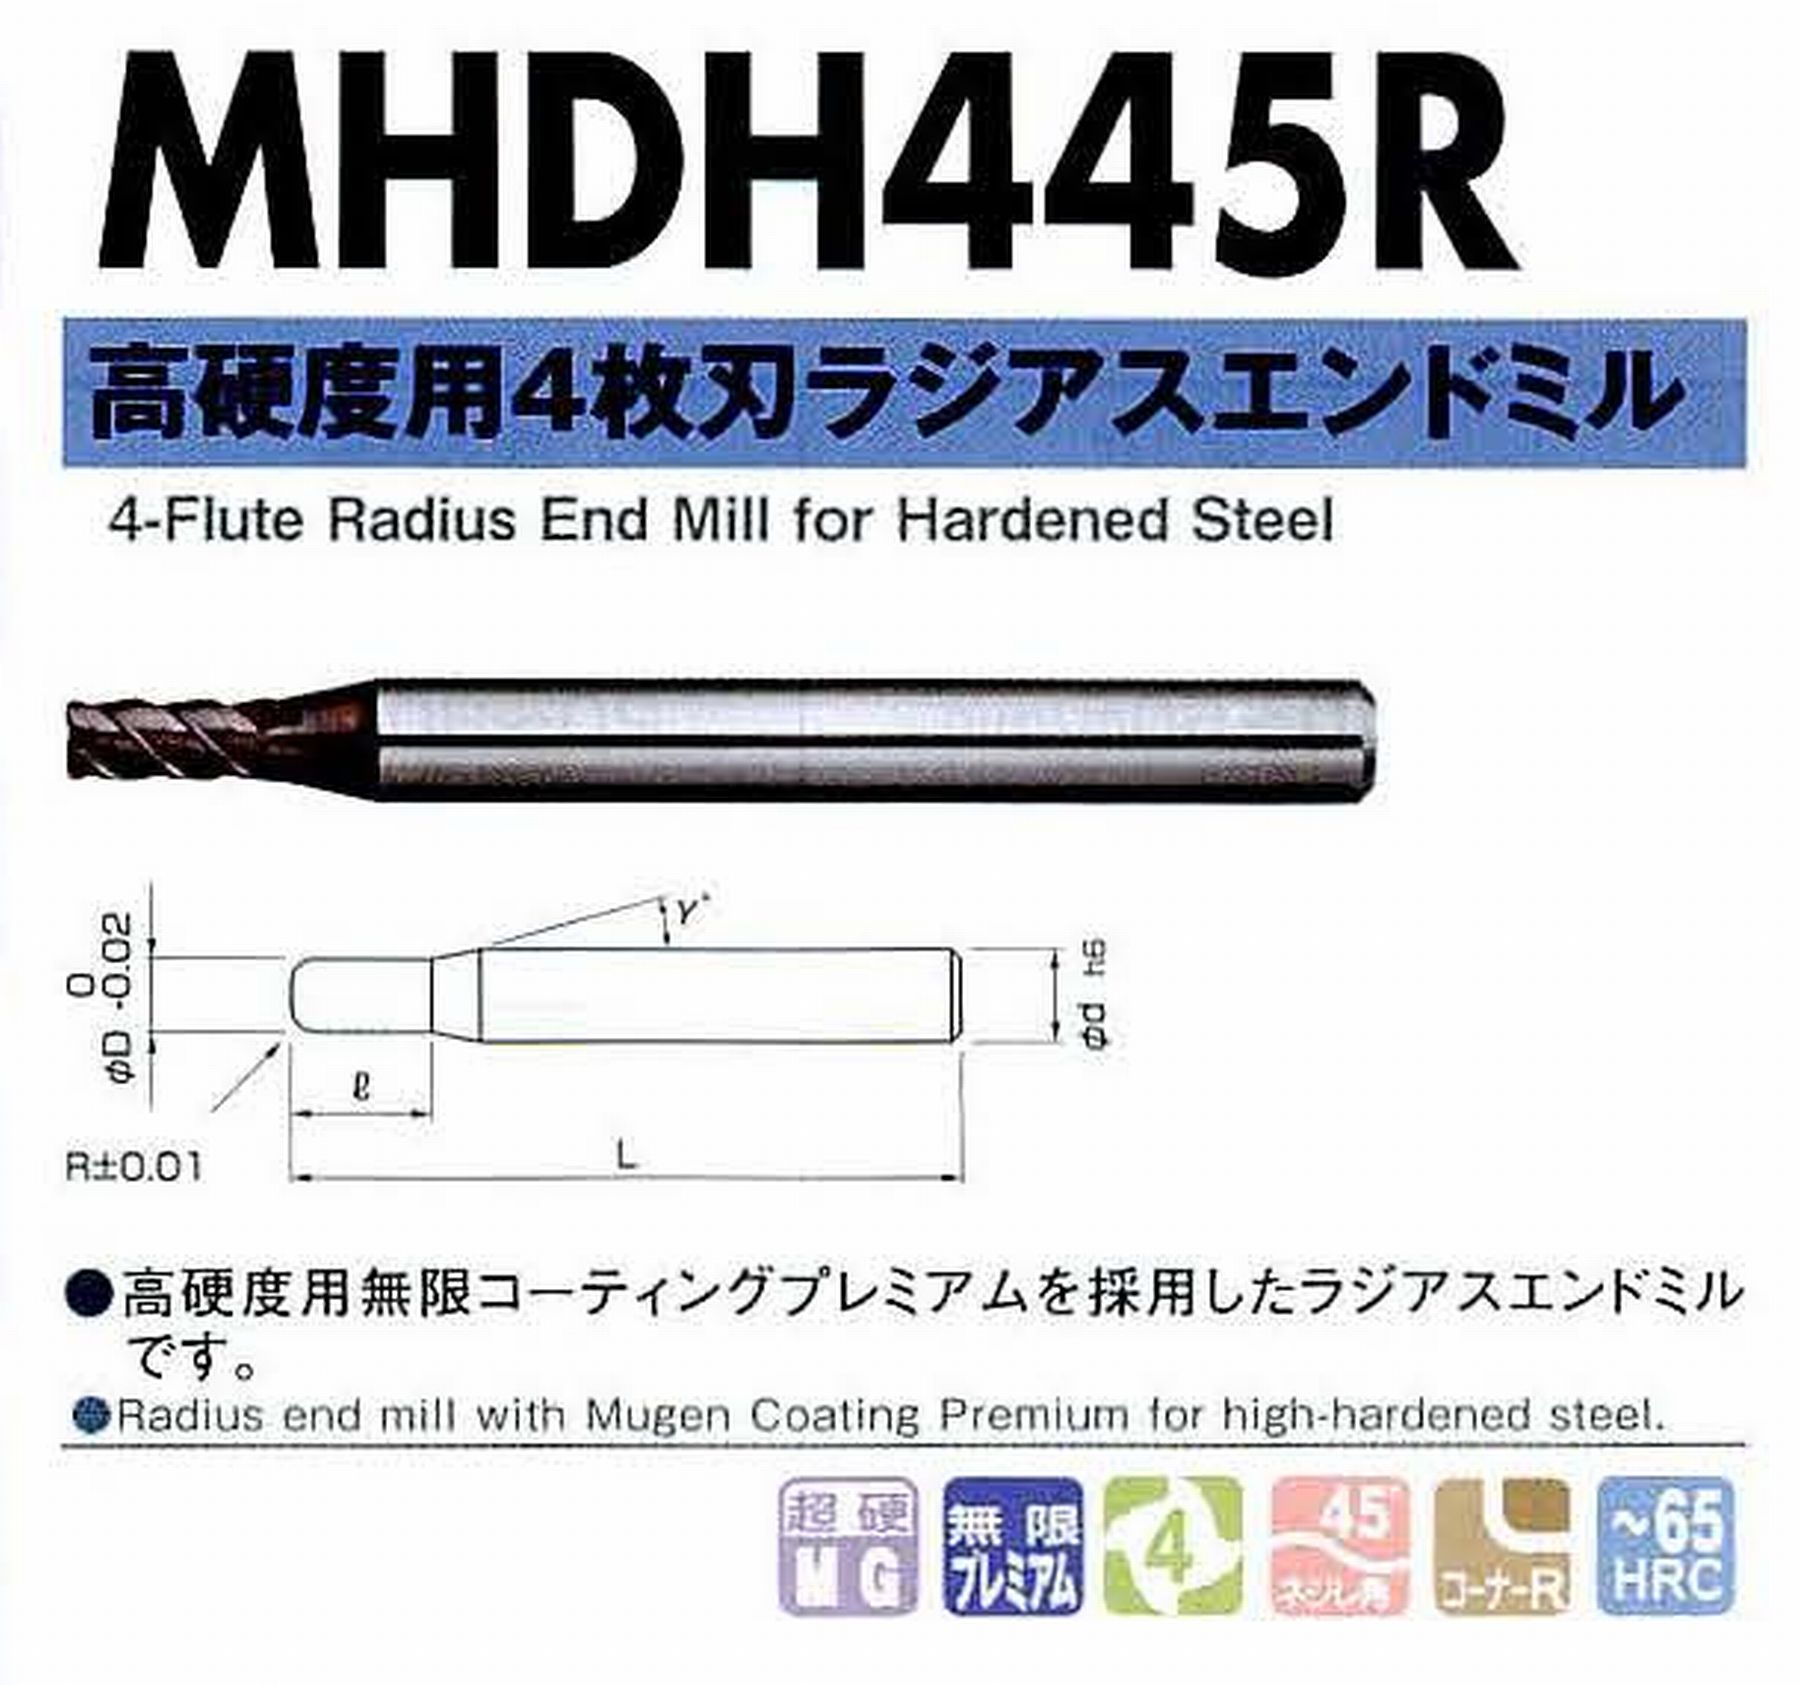 NS 日進工具 MHDH445R 高硬度用4枚刃ラジアスエンドミル コードNO．08-00437-04005 刃径4 刃長8 コーナー半径R0.5 首角12° シャンク径6mm 全長60